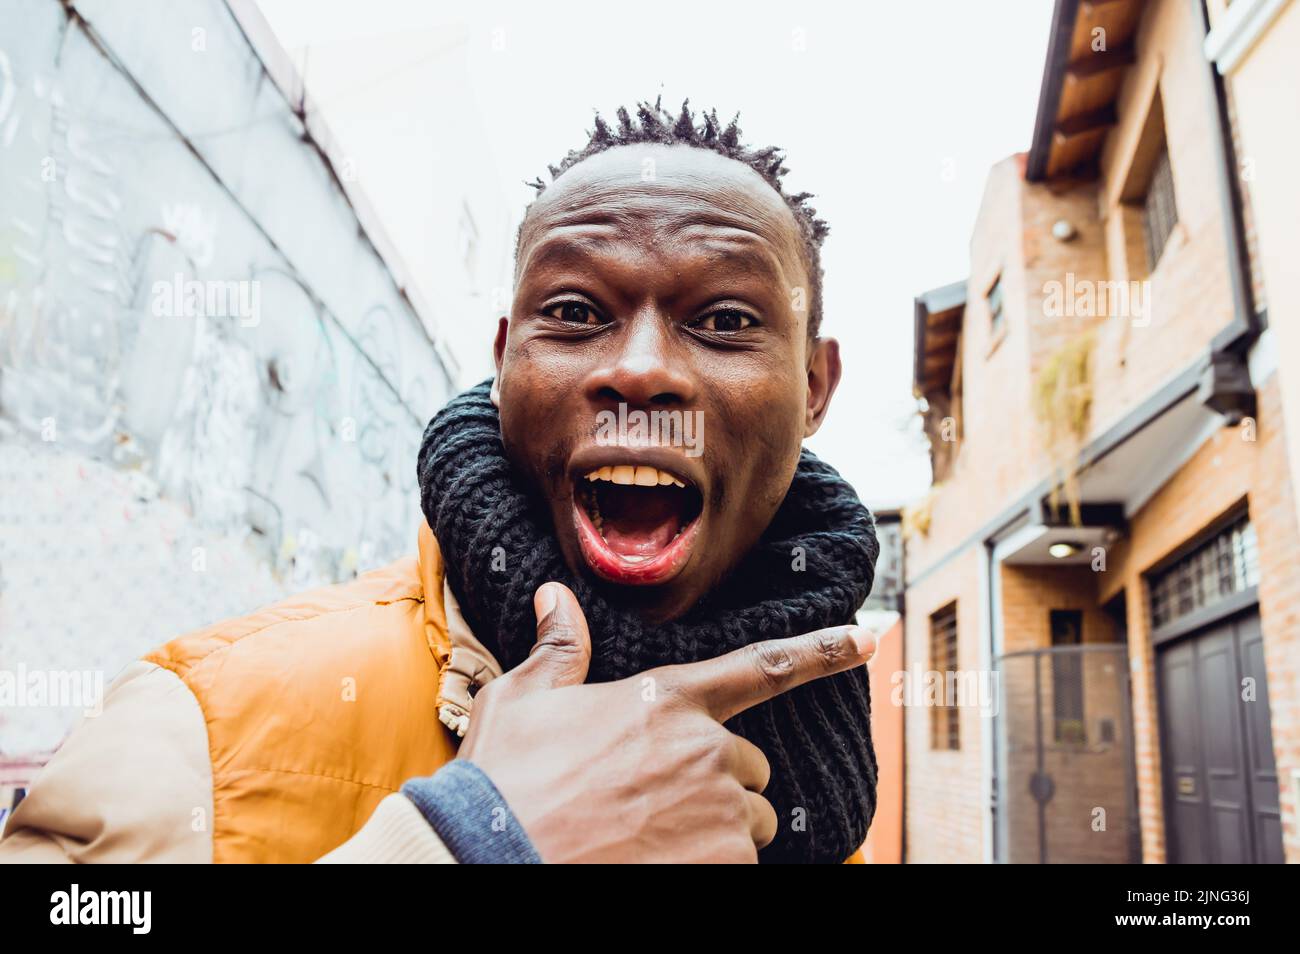 Nahaufnahme eines jungen afrikanischen Mannes, der auf der Straße steht, mit schwarzem Schal, Ausdruck von Freude und mit einem großen Lächeln, der auf die Kamera schaut. Stockfoto